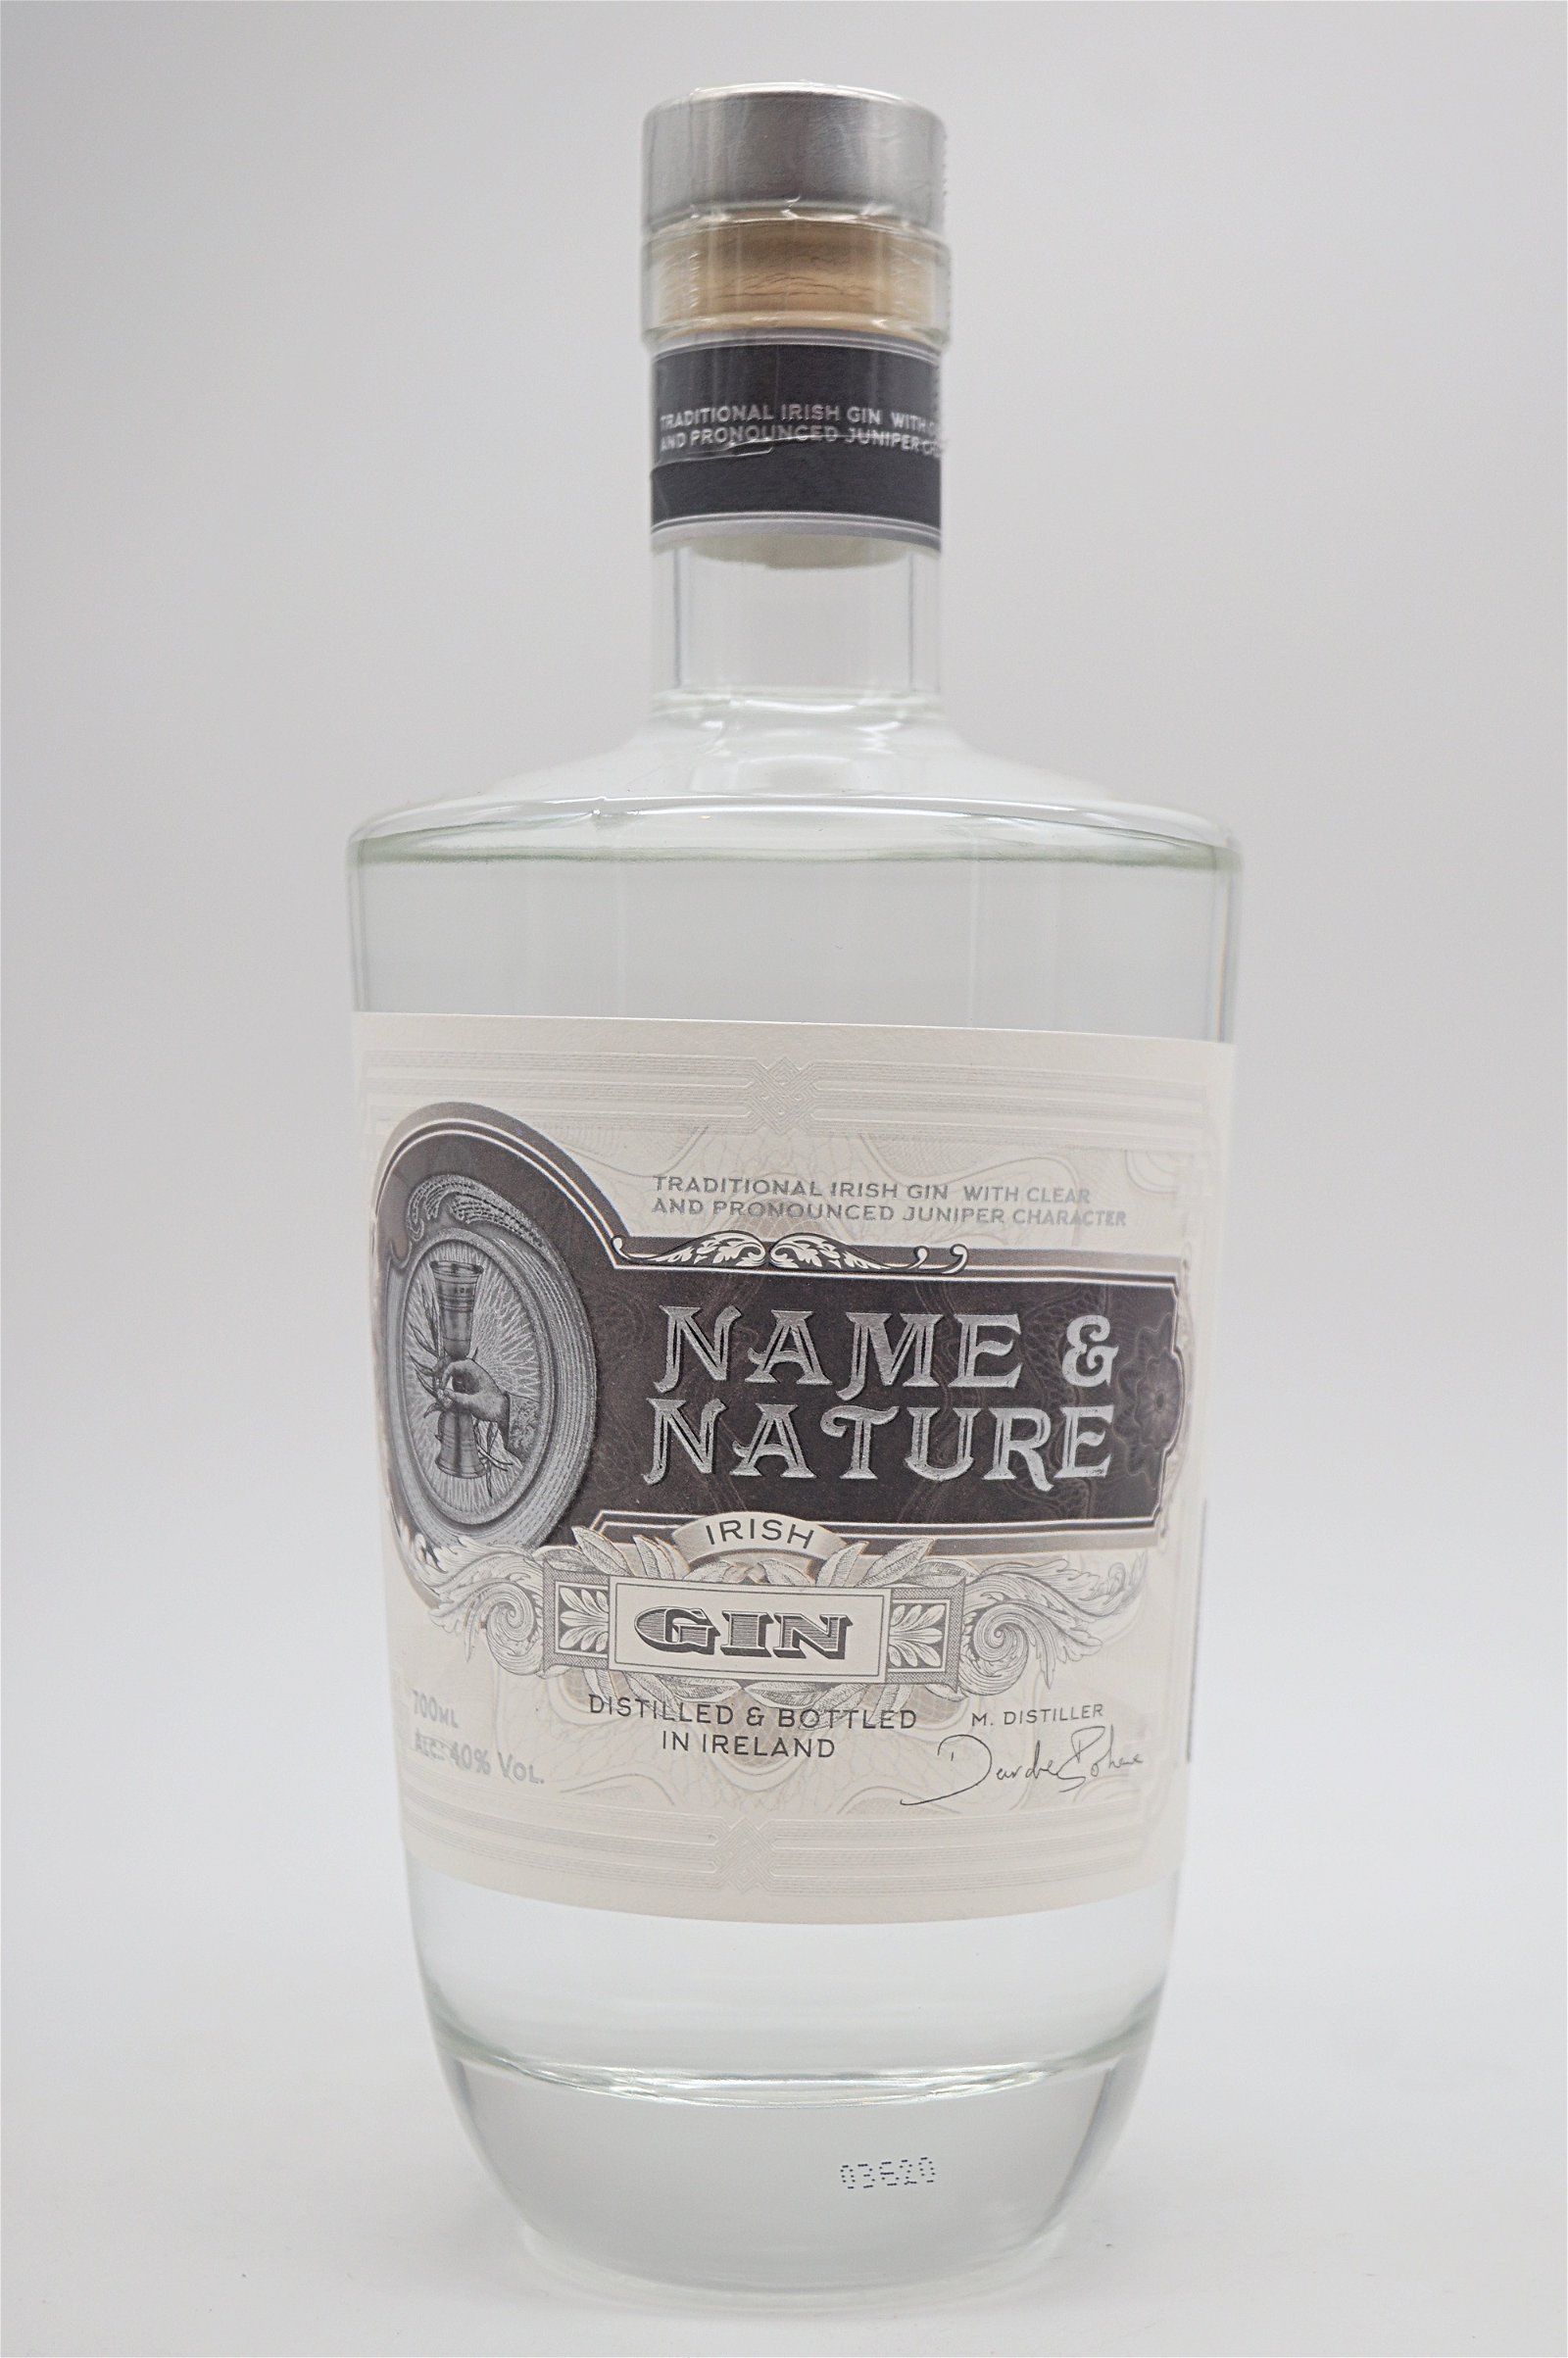 Name & Nature Pure Irish Gin